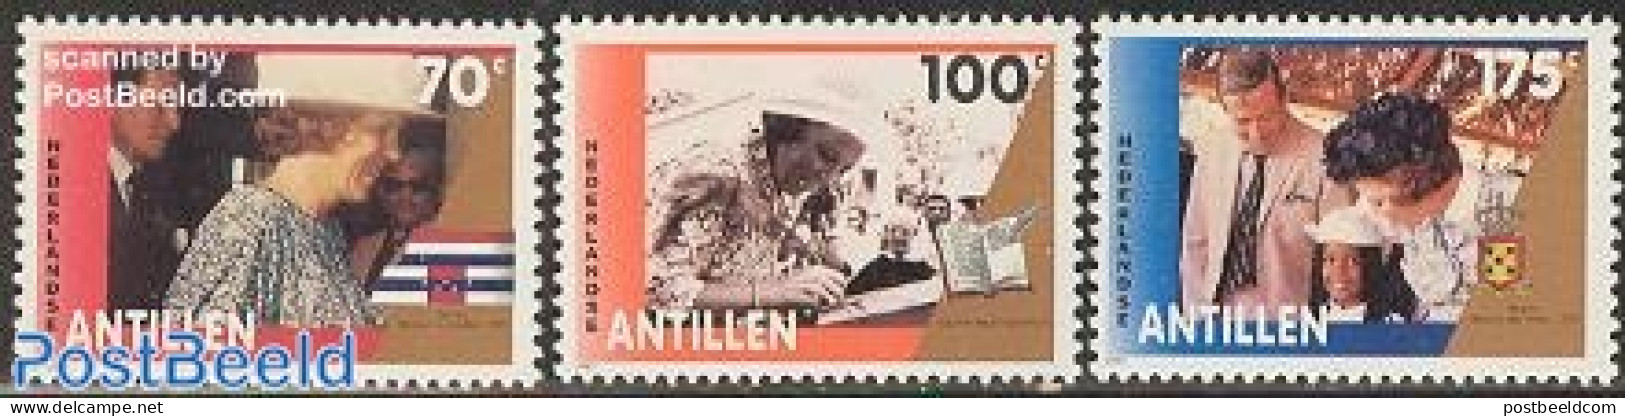 Netherlands Antilles 1992 Royal Visit 3v, Mint NH, History - Kings & Queens (Royalty) - Royalties, Royals